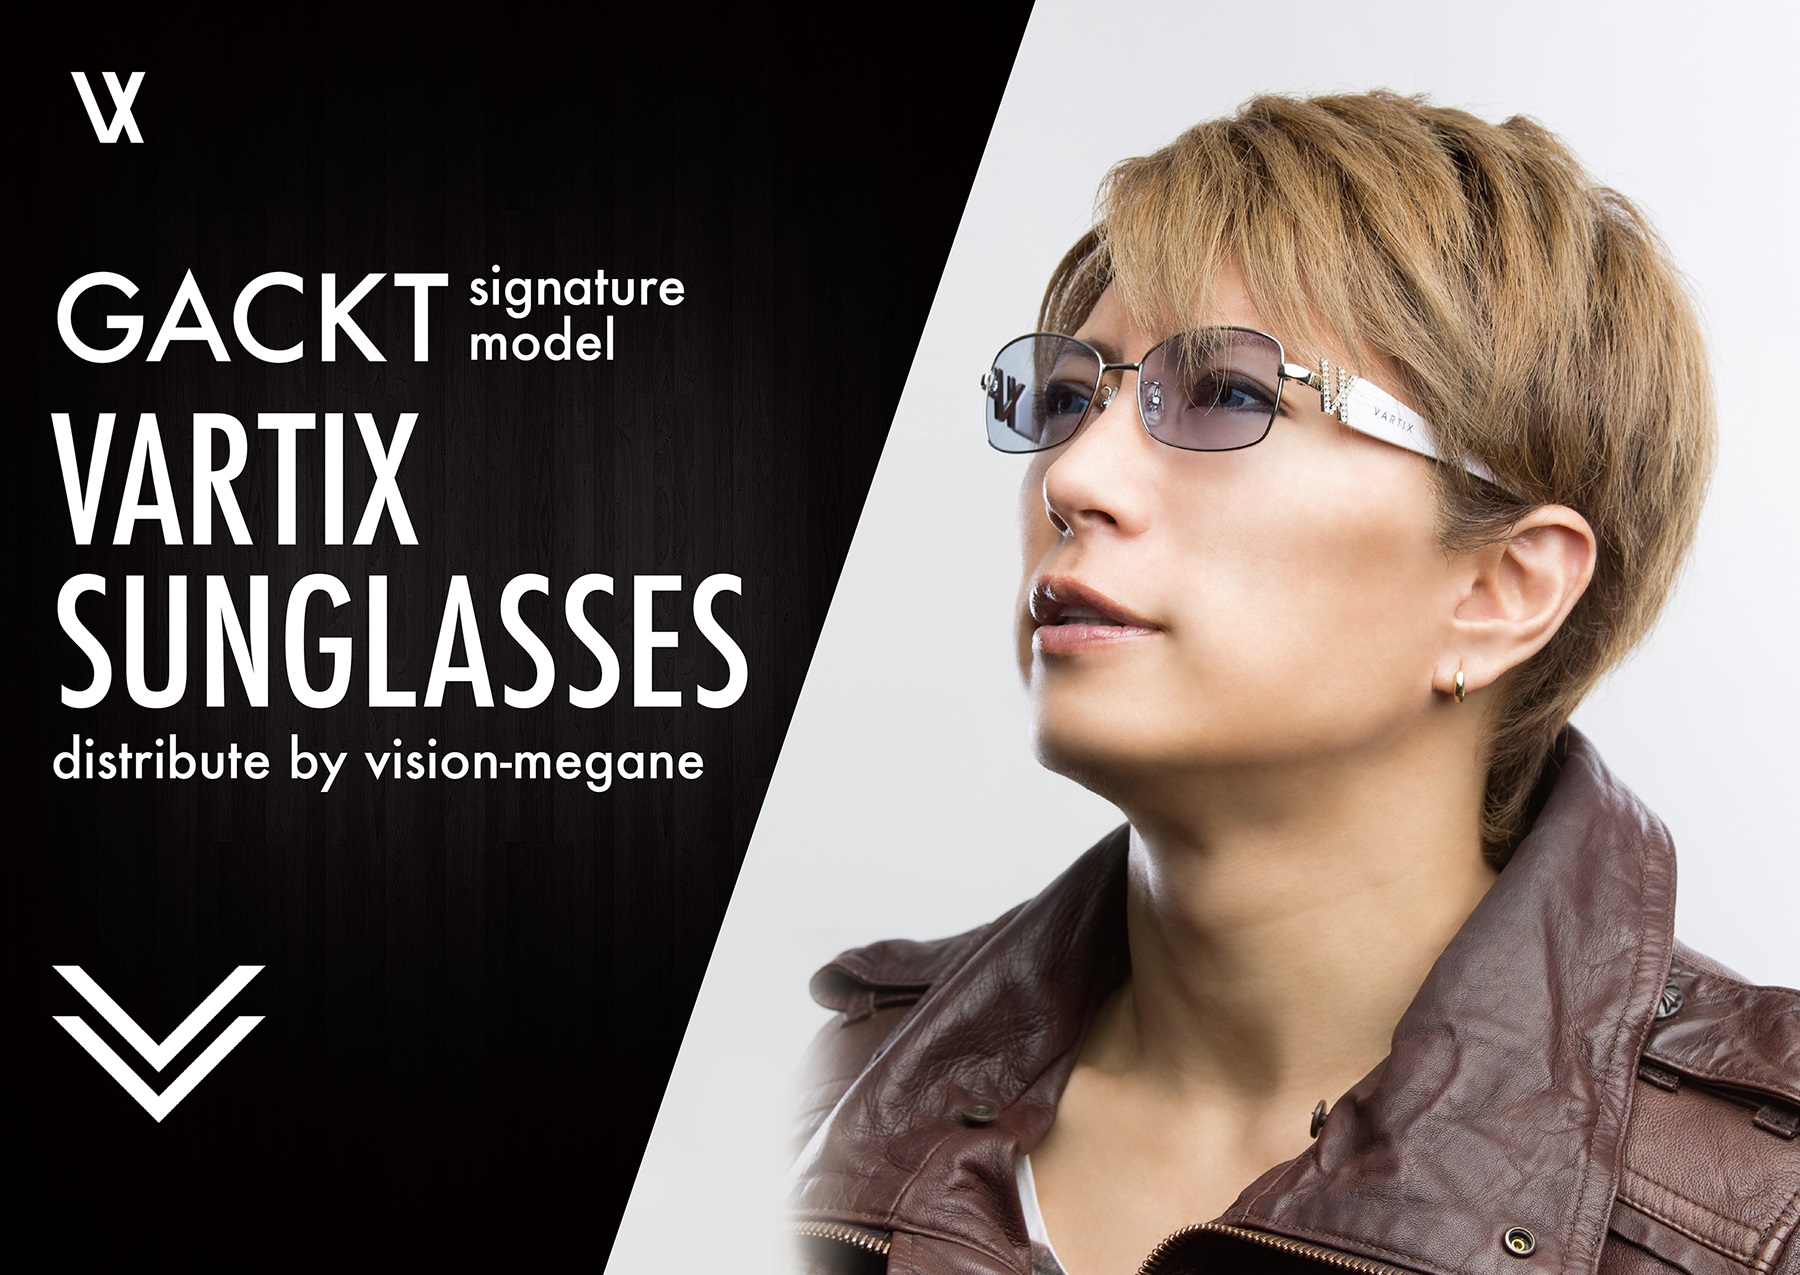 ビジョンメガネ Gacktさんとvartixとのコラボサングラス独占販売決定 Gackt Vartix Sunglasses 16 年3月18日 木 インターネット 店頭同時発売開始 株式会社ビジョンメガネのプレスリリース